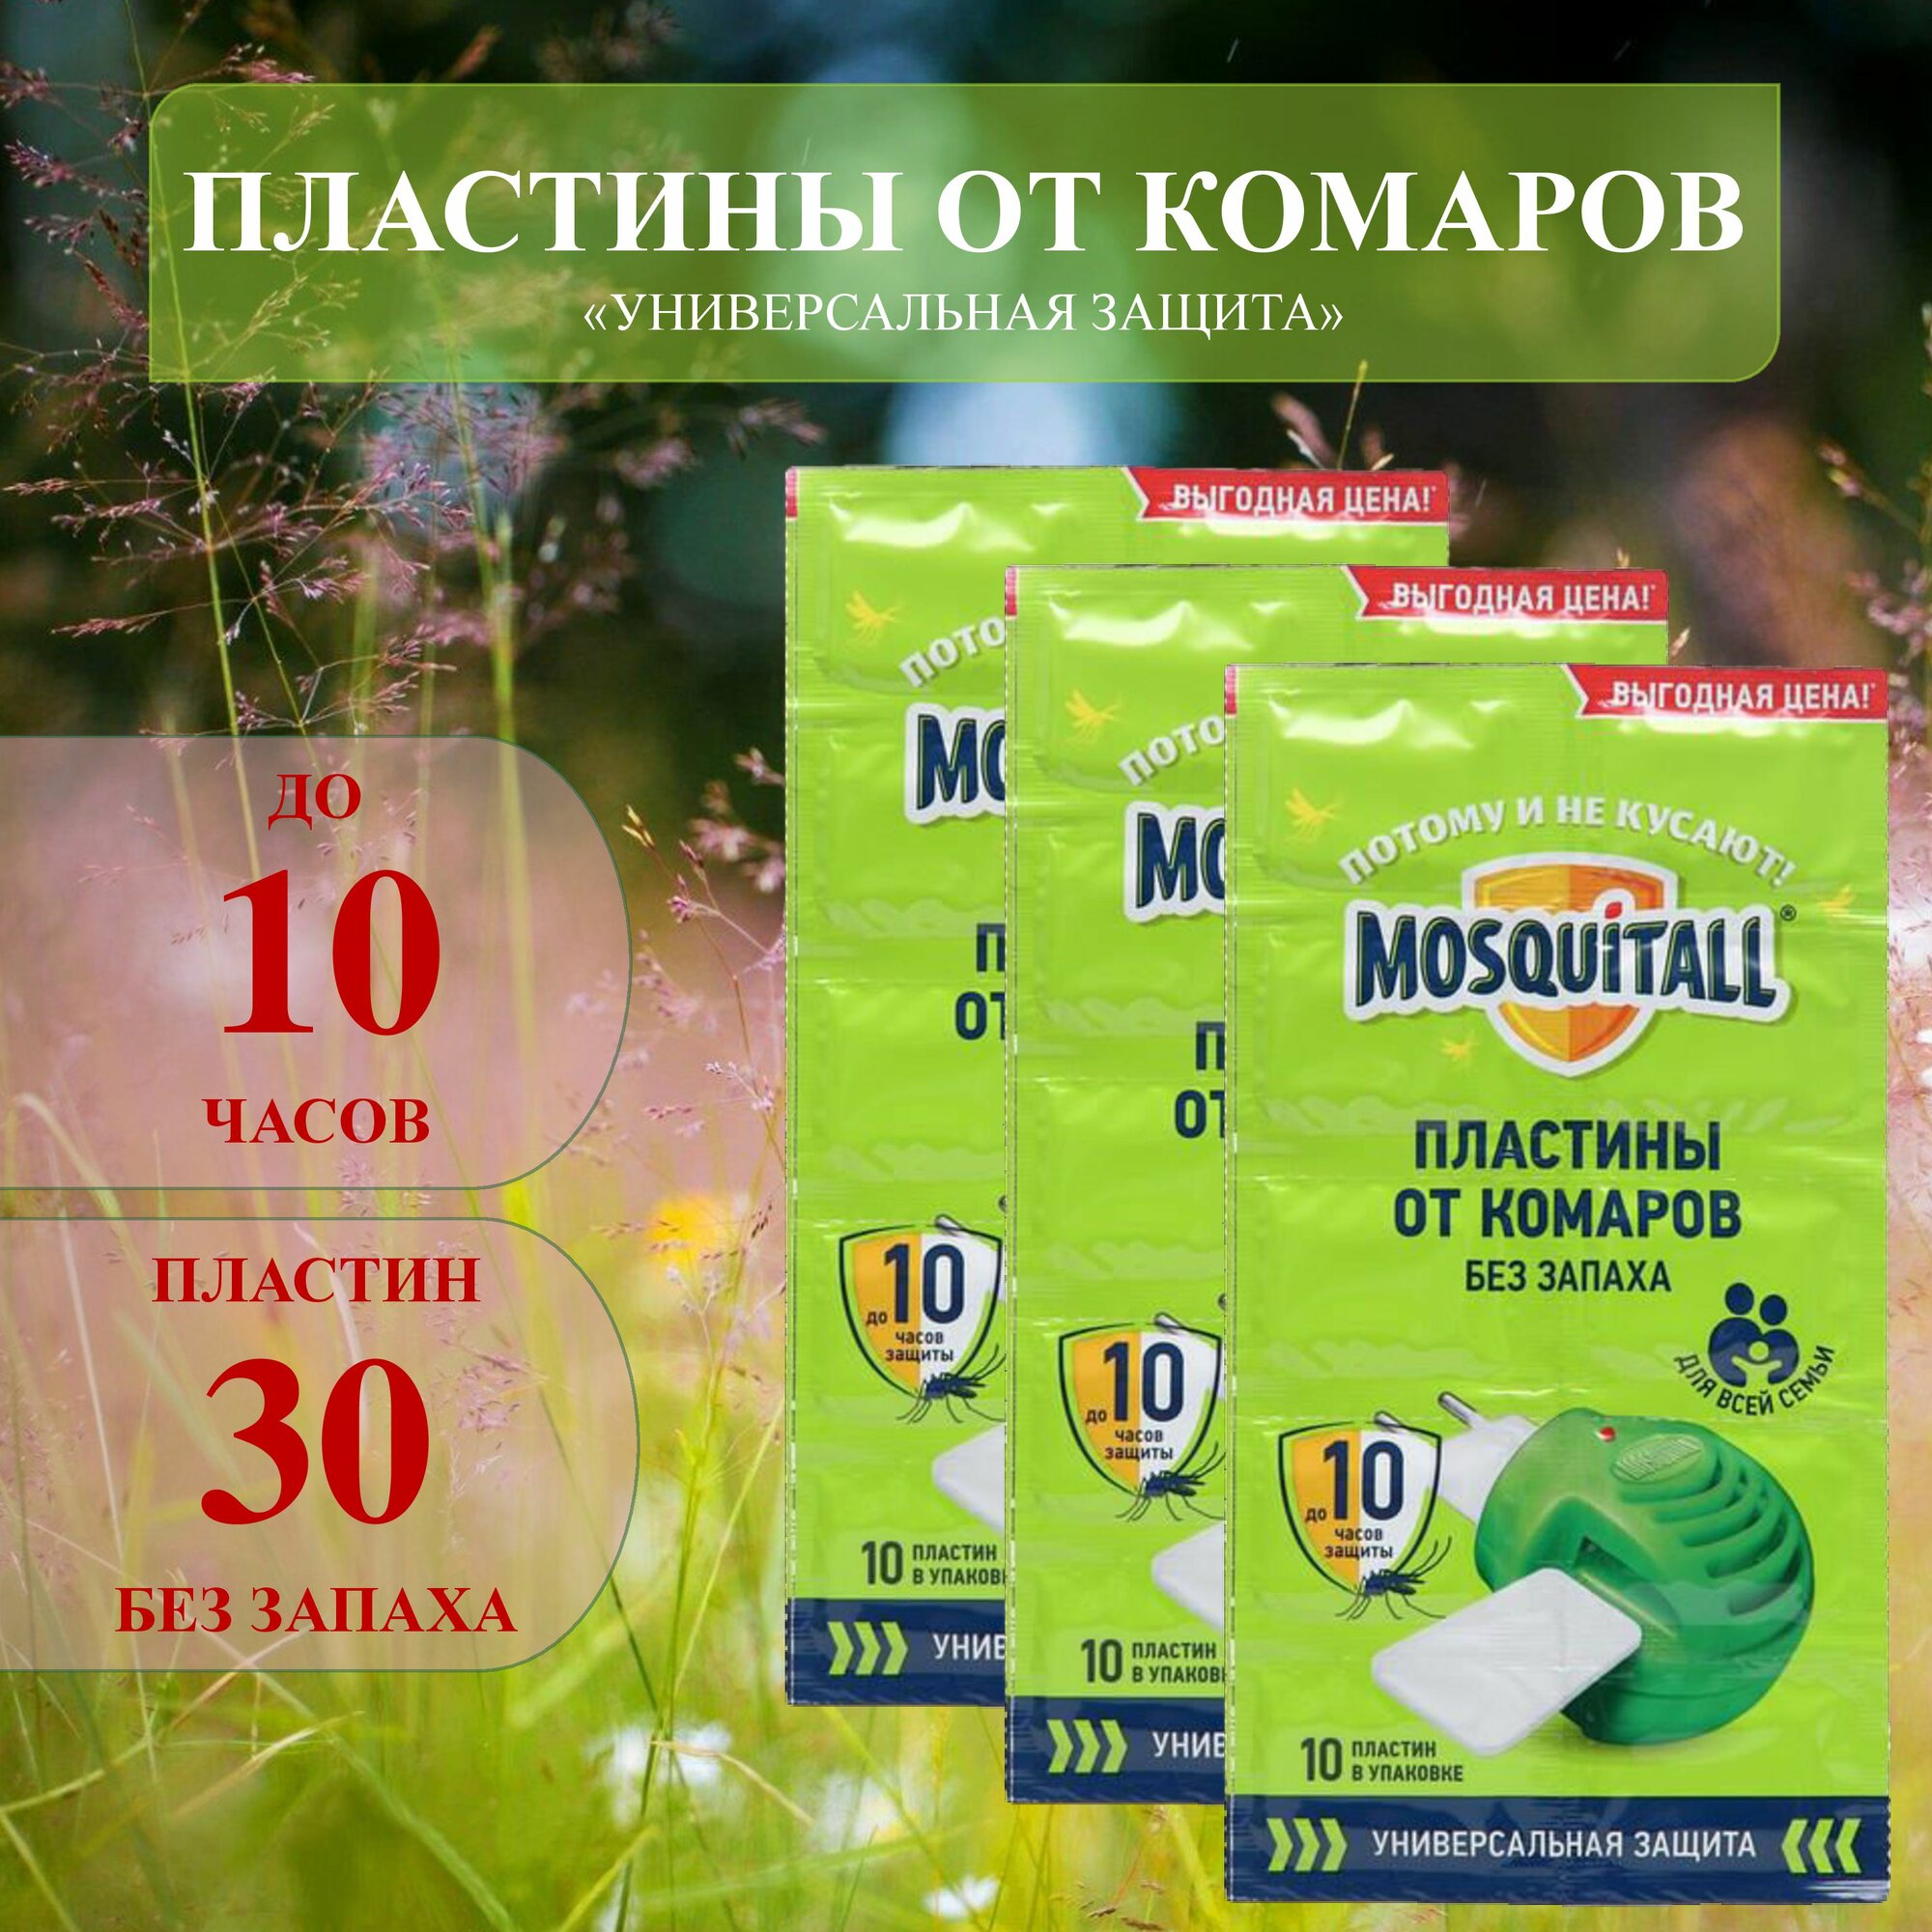 Москитол пластины от комаров без запаха универсальные 30 шт (3 упаковки по 10 шт)